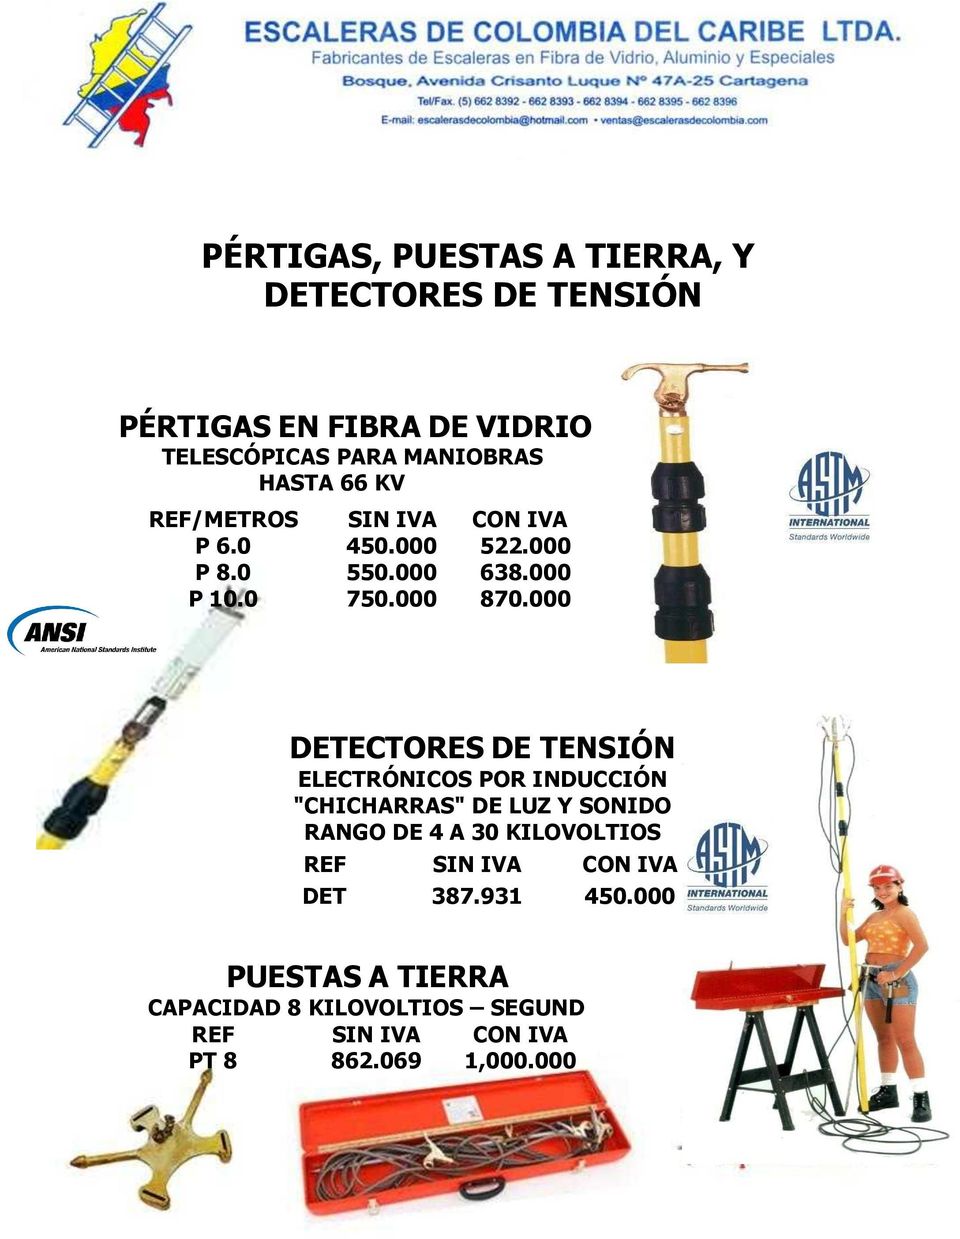 000 DETECTORES DE TENSIÓN ELECTRÓNICOS POR INDUCCIÓN "CHICHARRAS" DE LUZ Y SONIDO RANGO DE 4 A 30